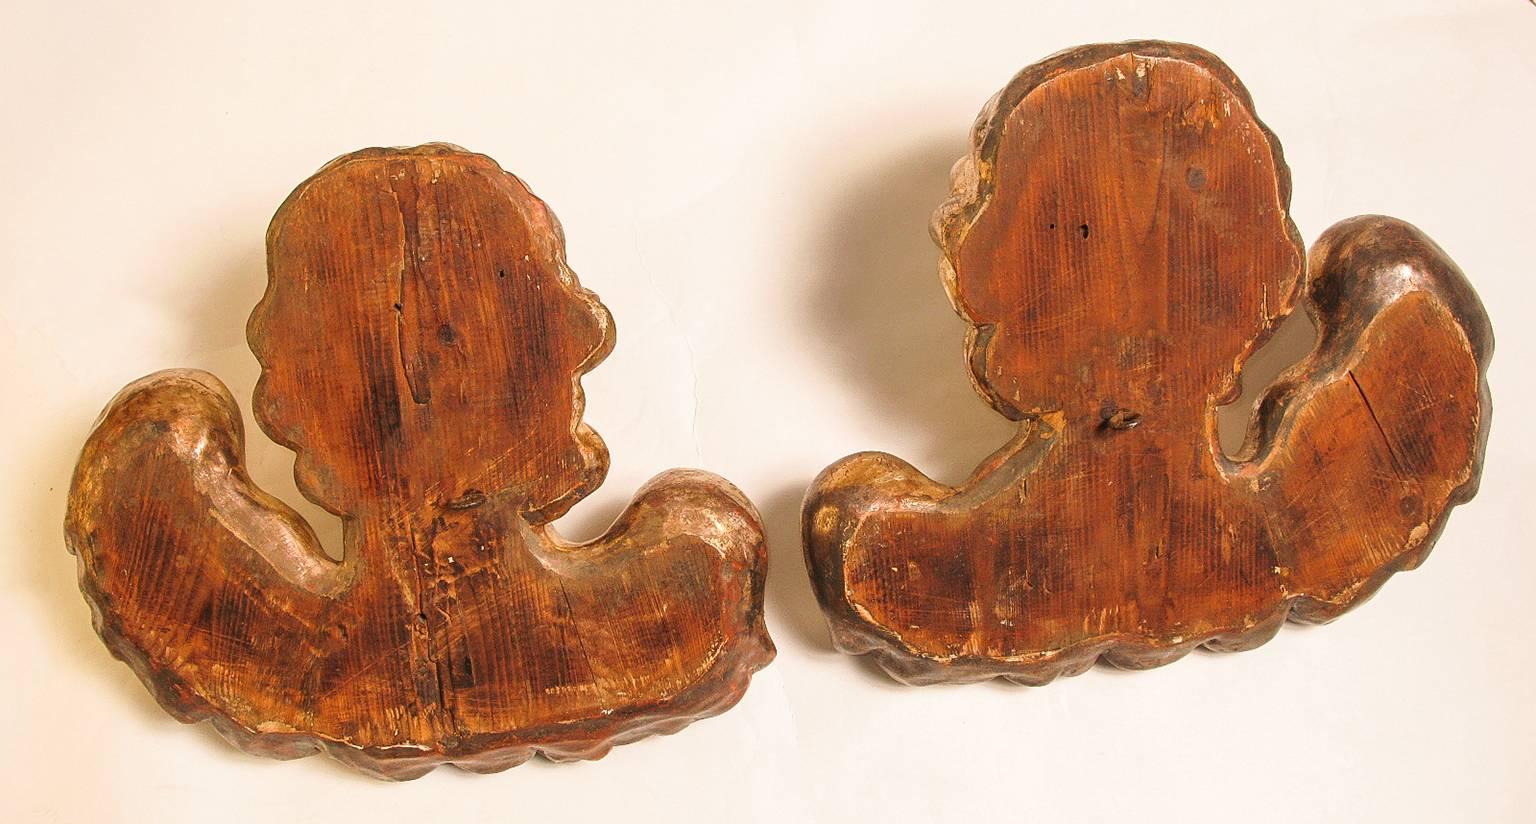 O/7283 -  Wunderschöne antike venezianische Engel  aus geschnitztem und vergoldetem Holz, mit besonders ausdrucksstarken Gesichtern - 
Das ist eine sehr gute Qualität  und eine interessante Größe, die selten zu finden ist.  Was ist besser für Ihr